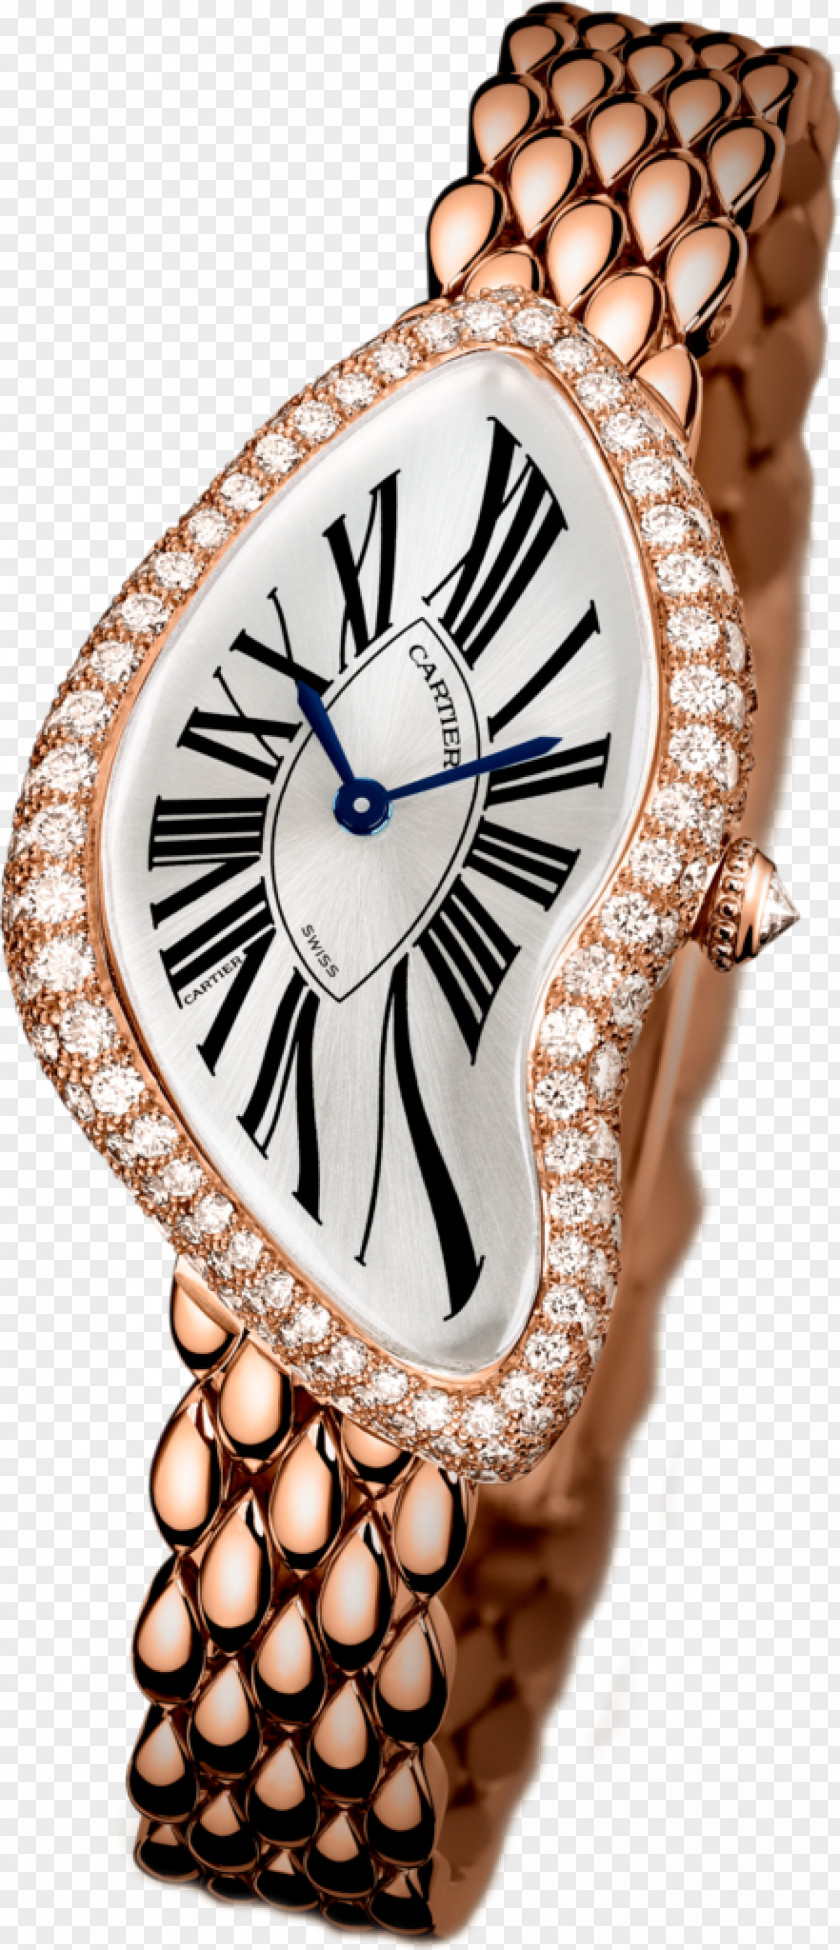 Watch Cartier Diamond Gold PNG